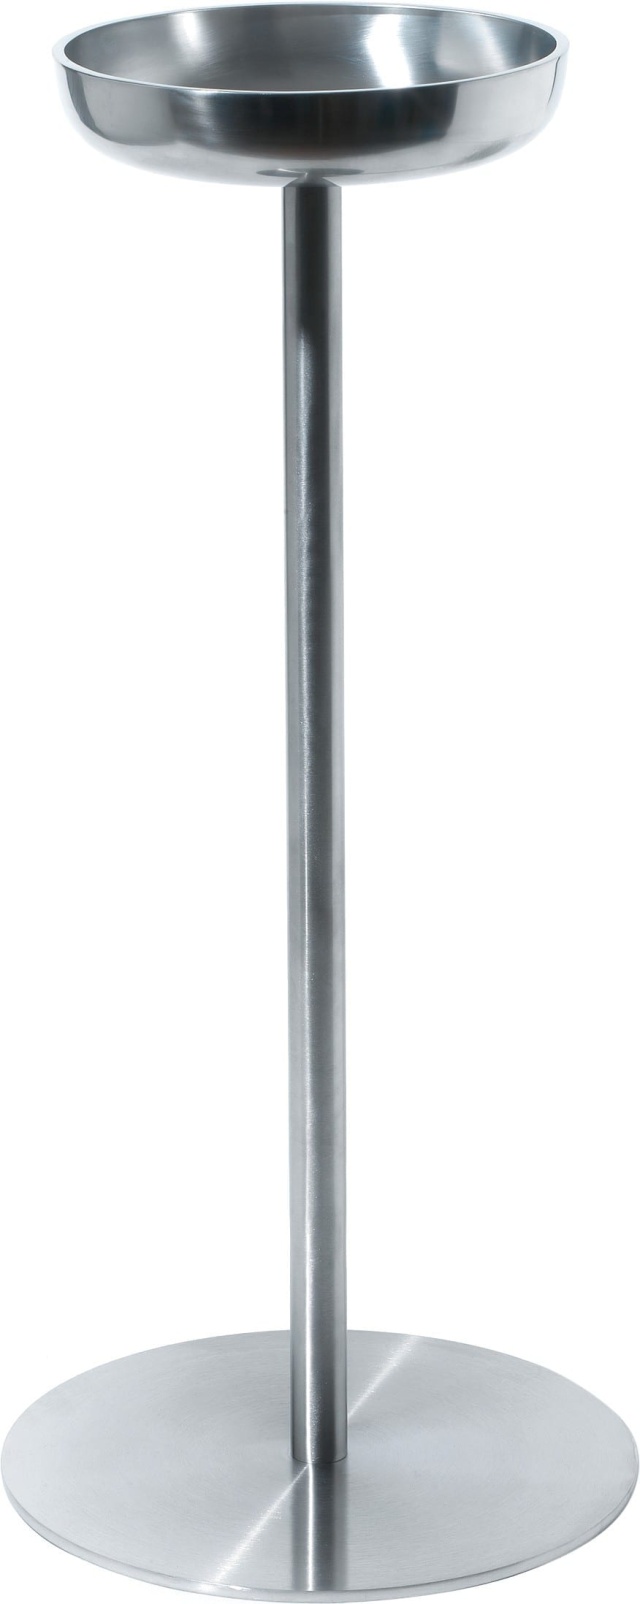 Stander til vinkøler, Diameter 28 cm - Alessi